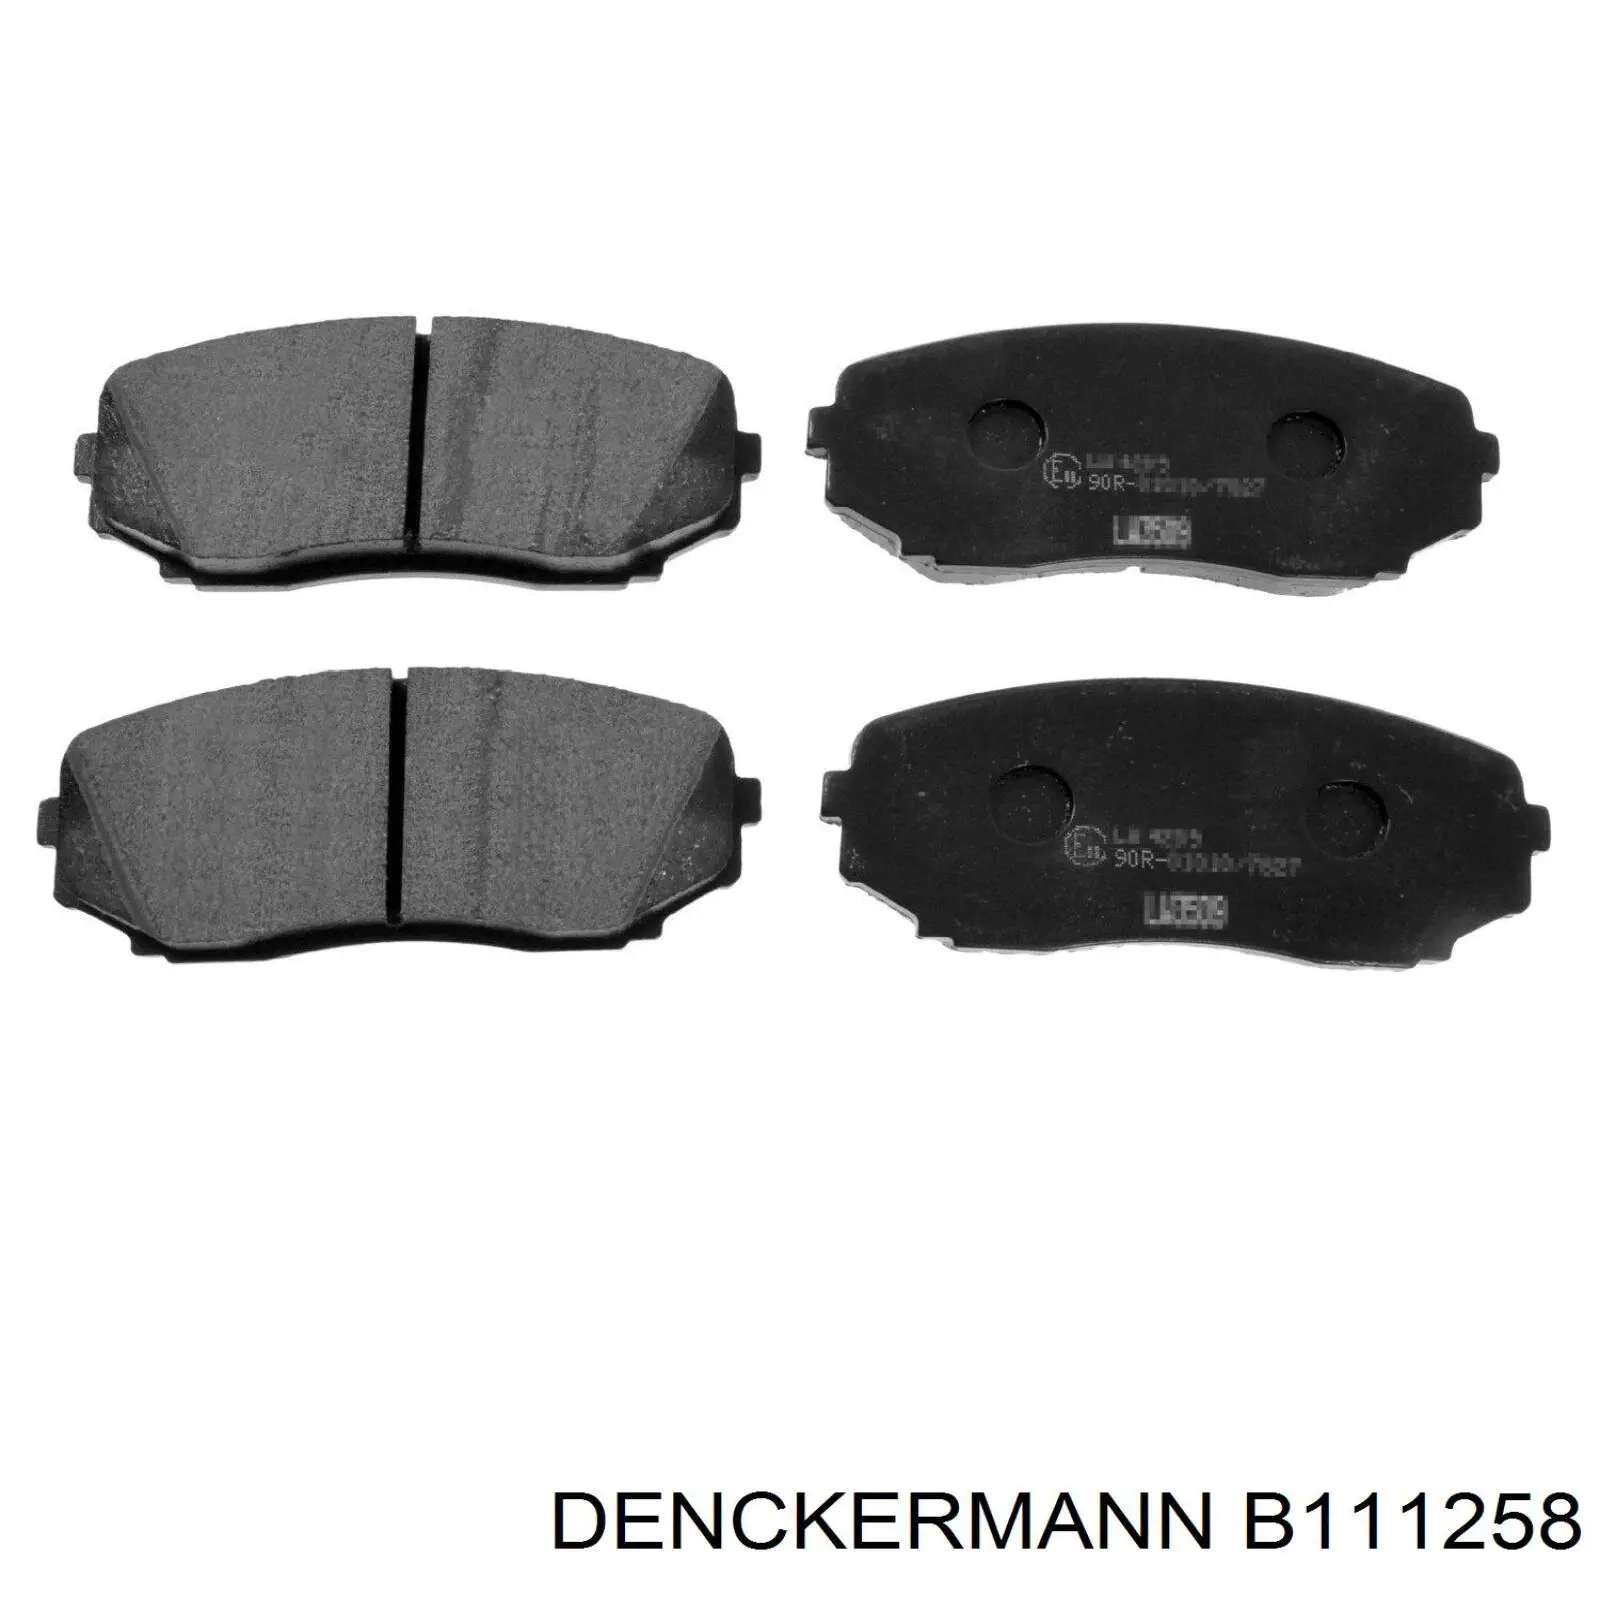 B111258 Denckermann pastillas de freno delanteras